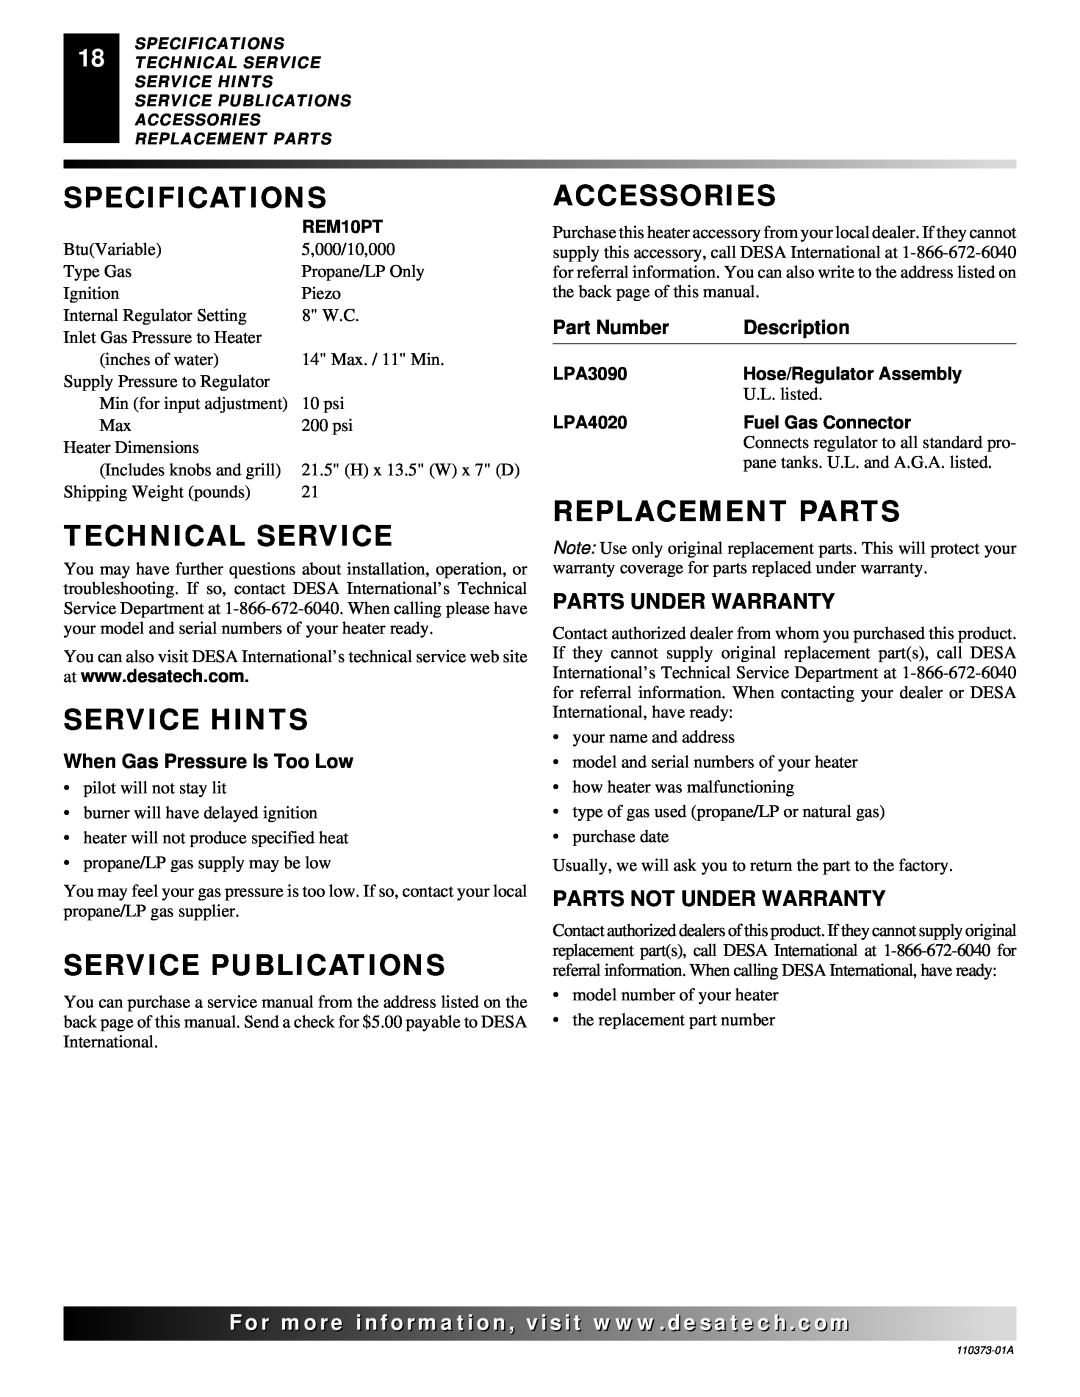 Desa REM10PT Specifications, Technical Service, Service Hints, Service Publications, Accessories, Replacement Parts 